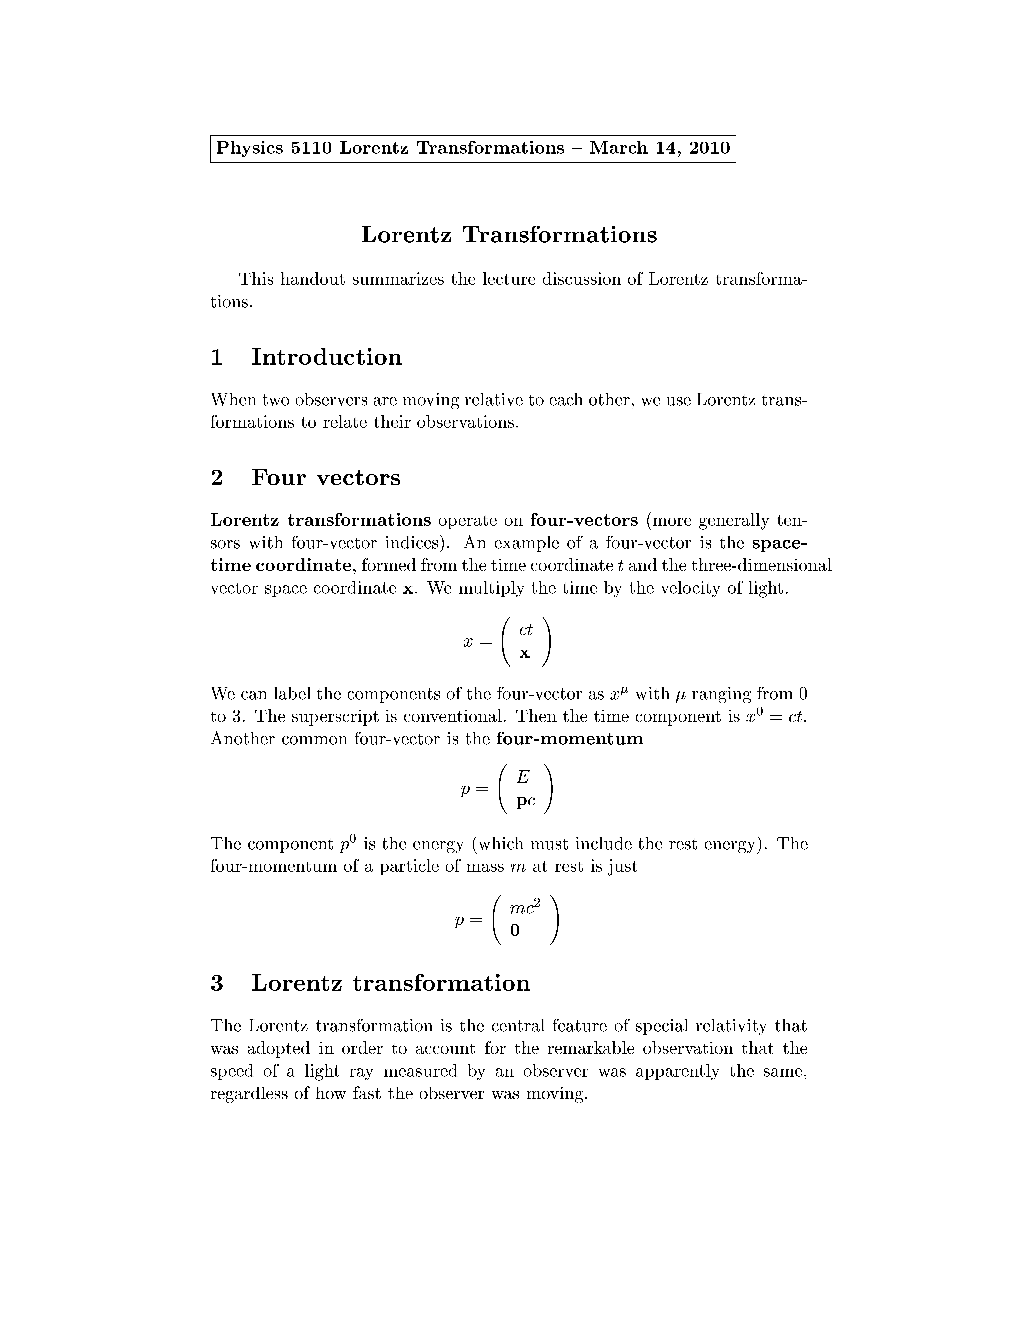 Lorentz Transformations 1 Introduction 2 Four Vectors 3 Lorentz